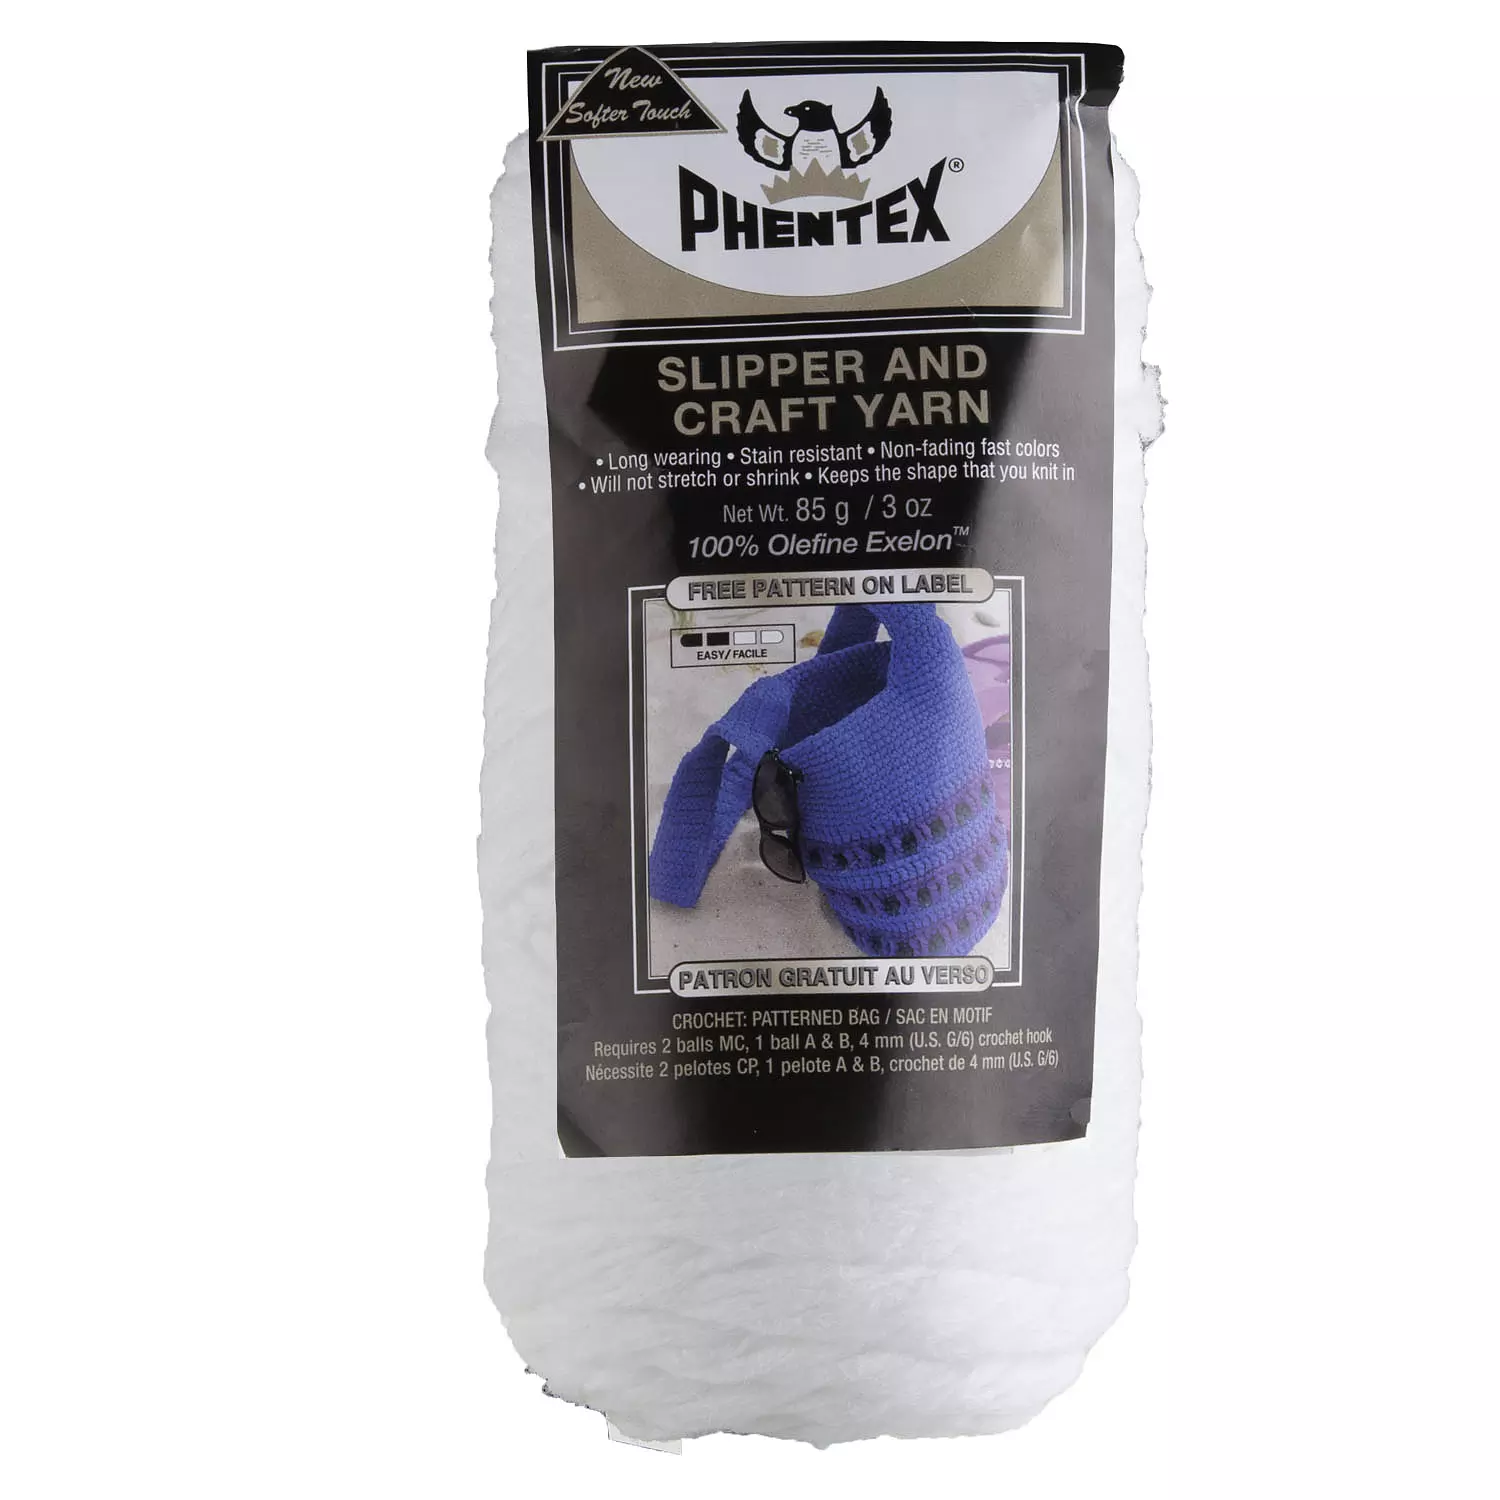 Phentex - Slipper and craft yarn, white